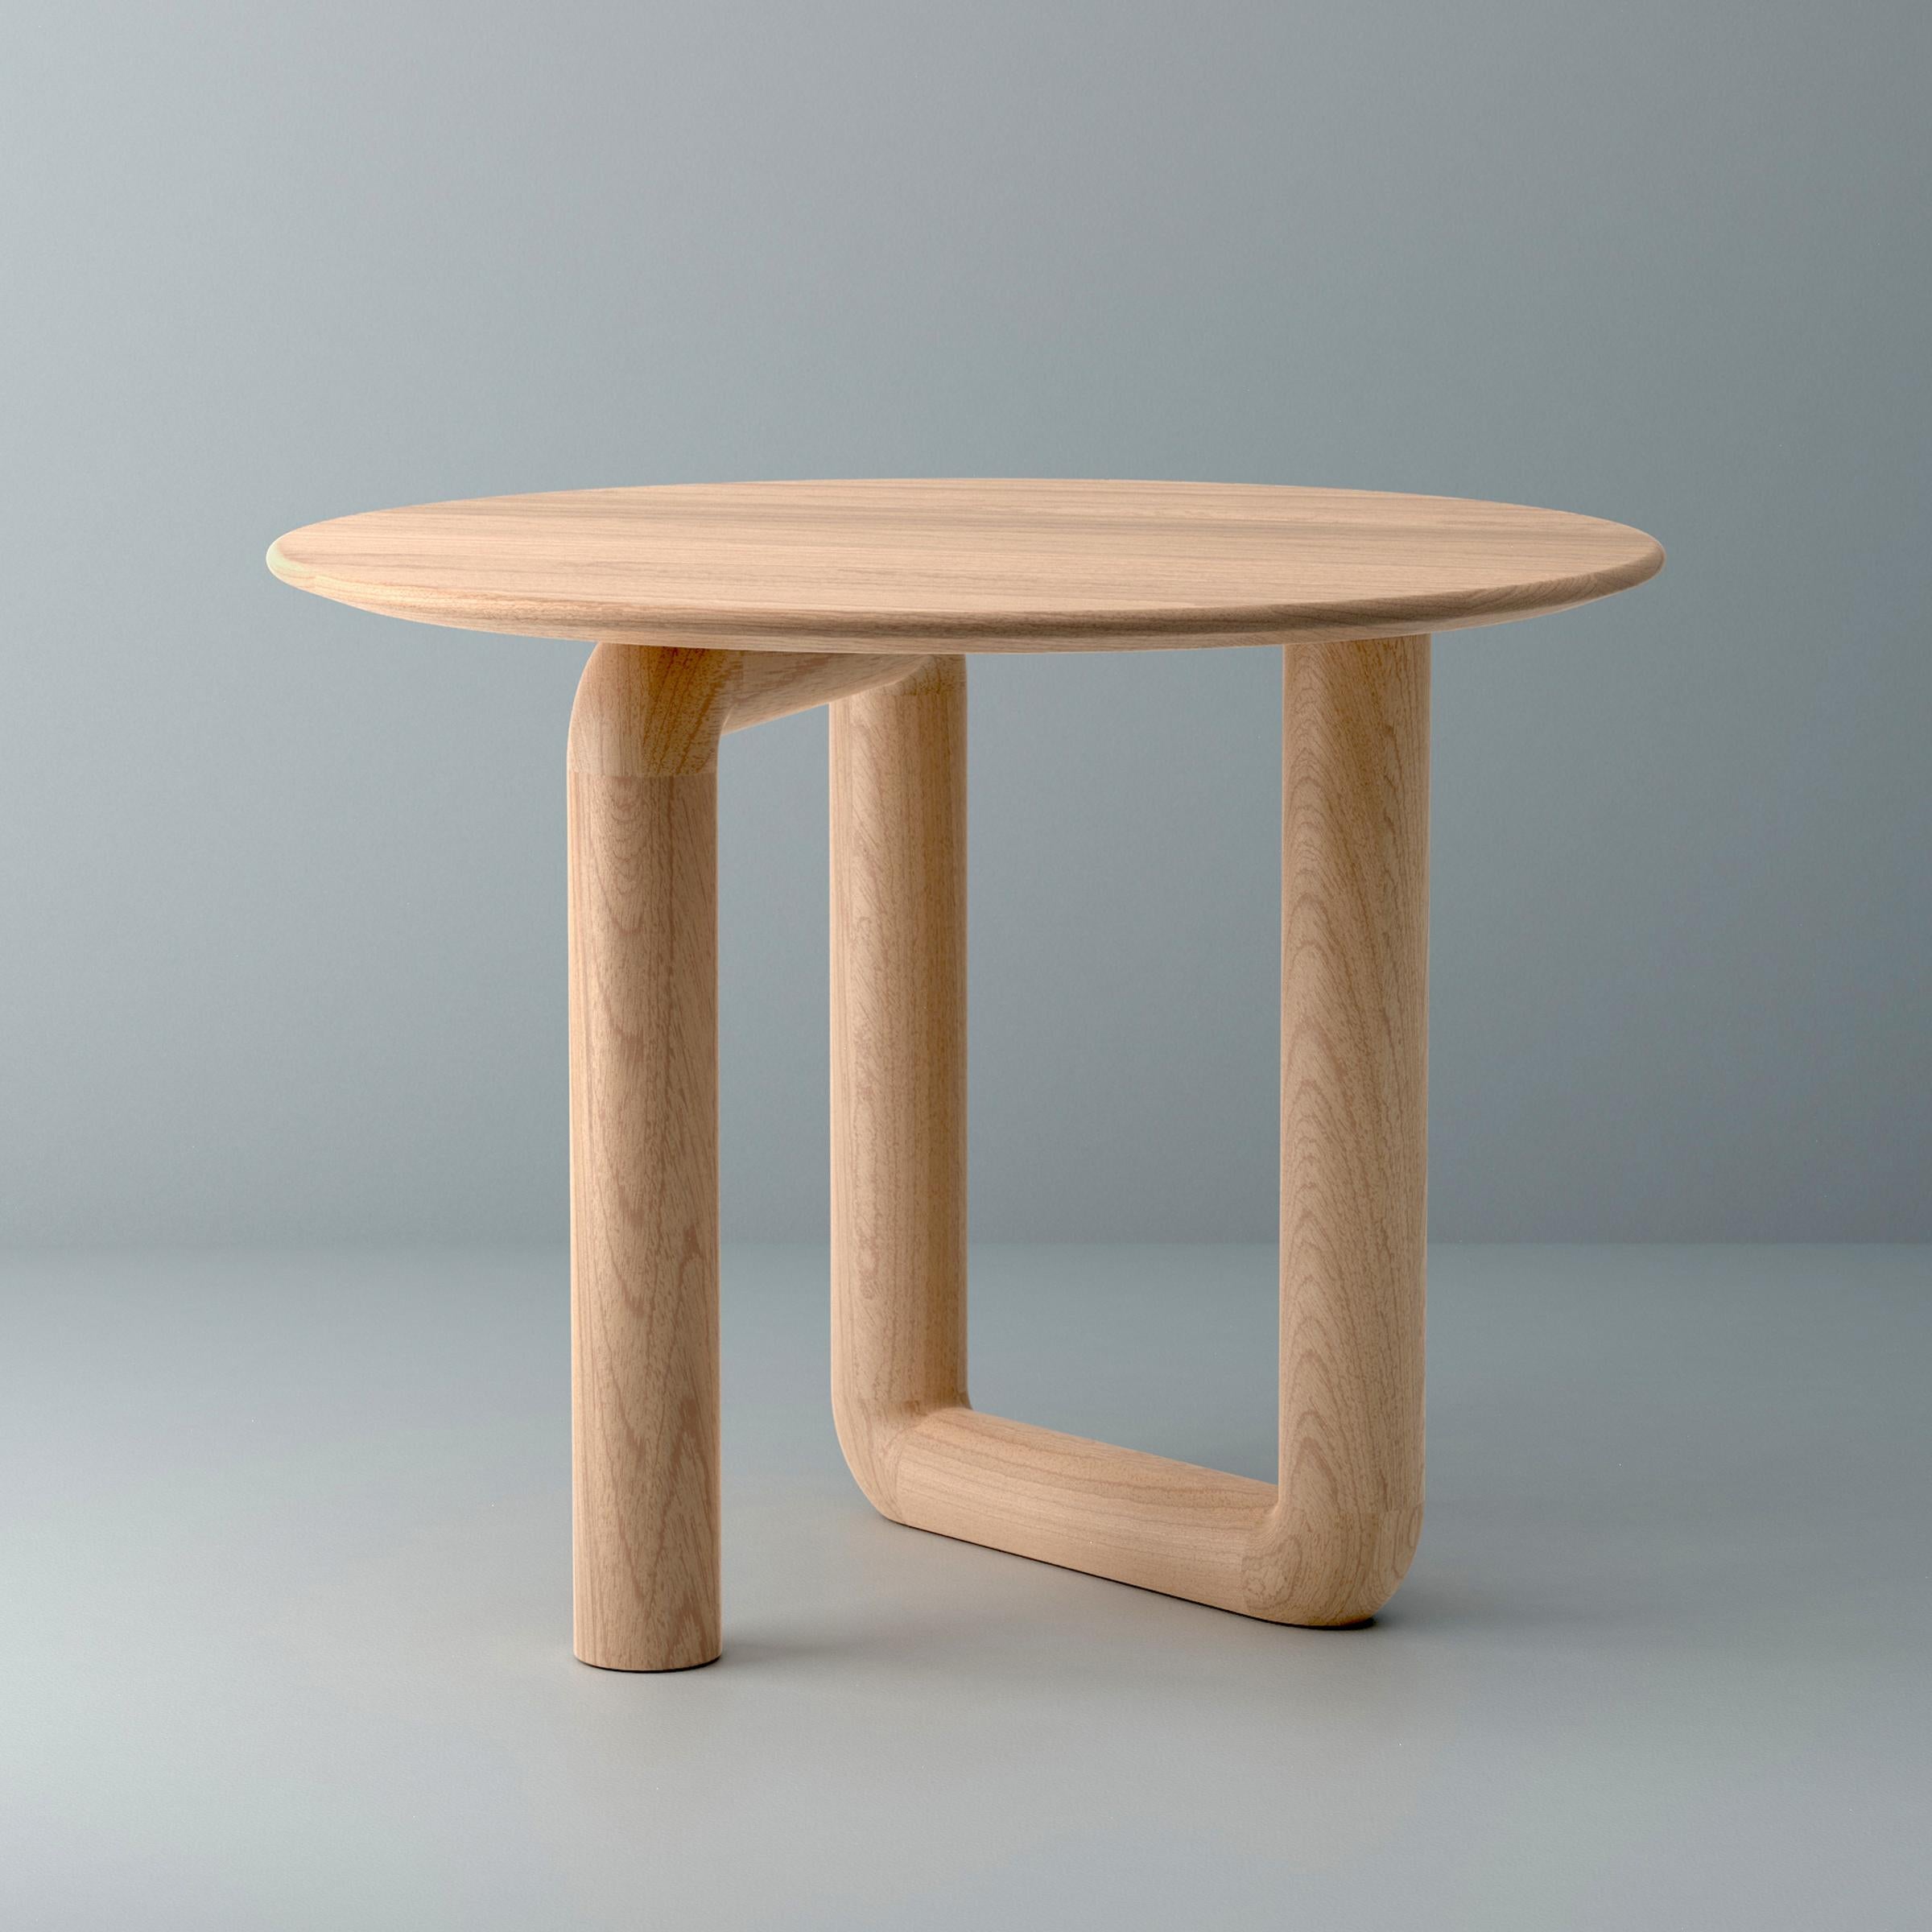 Faisant partie de la famille Mono du studio canadien Objects & Ideas, le plateau de cette table flotte au-dessus d'un seul contour de bois massif qui se tord et se retourne. Fabriquée à la main à partir de sources certifiées durables en utilisant